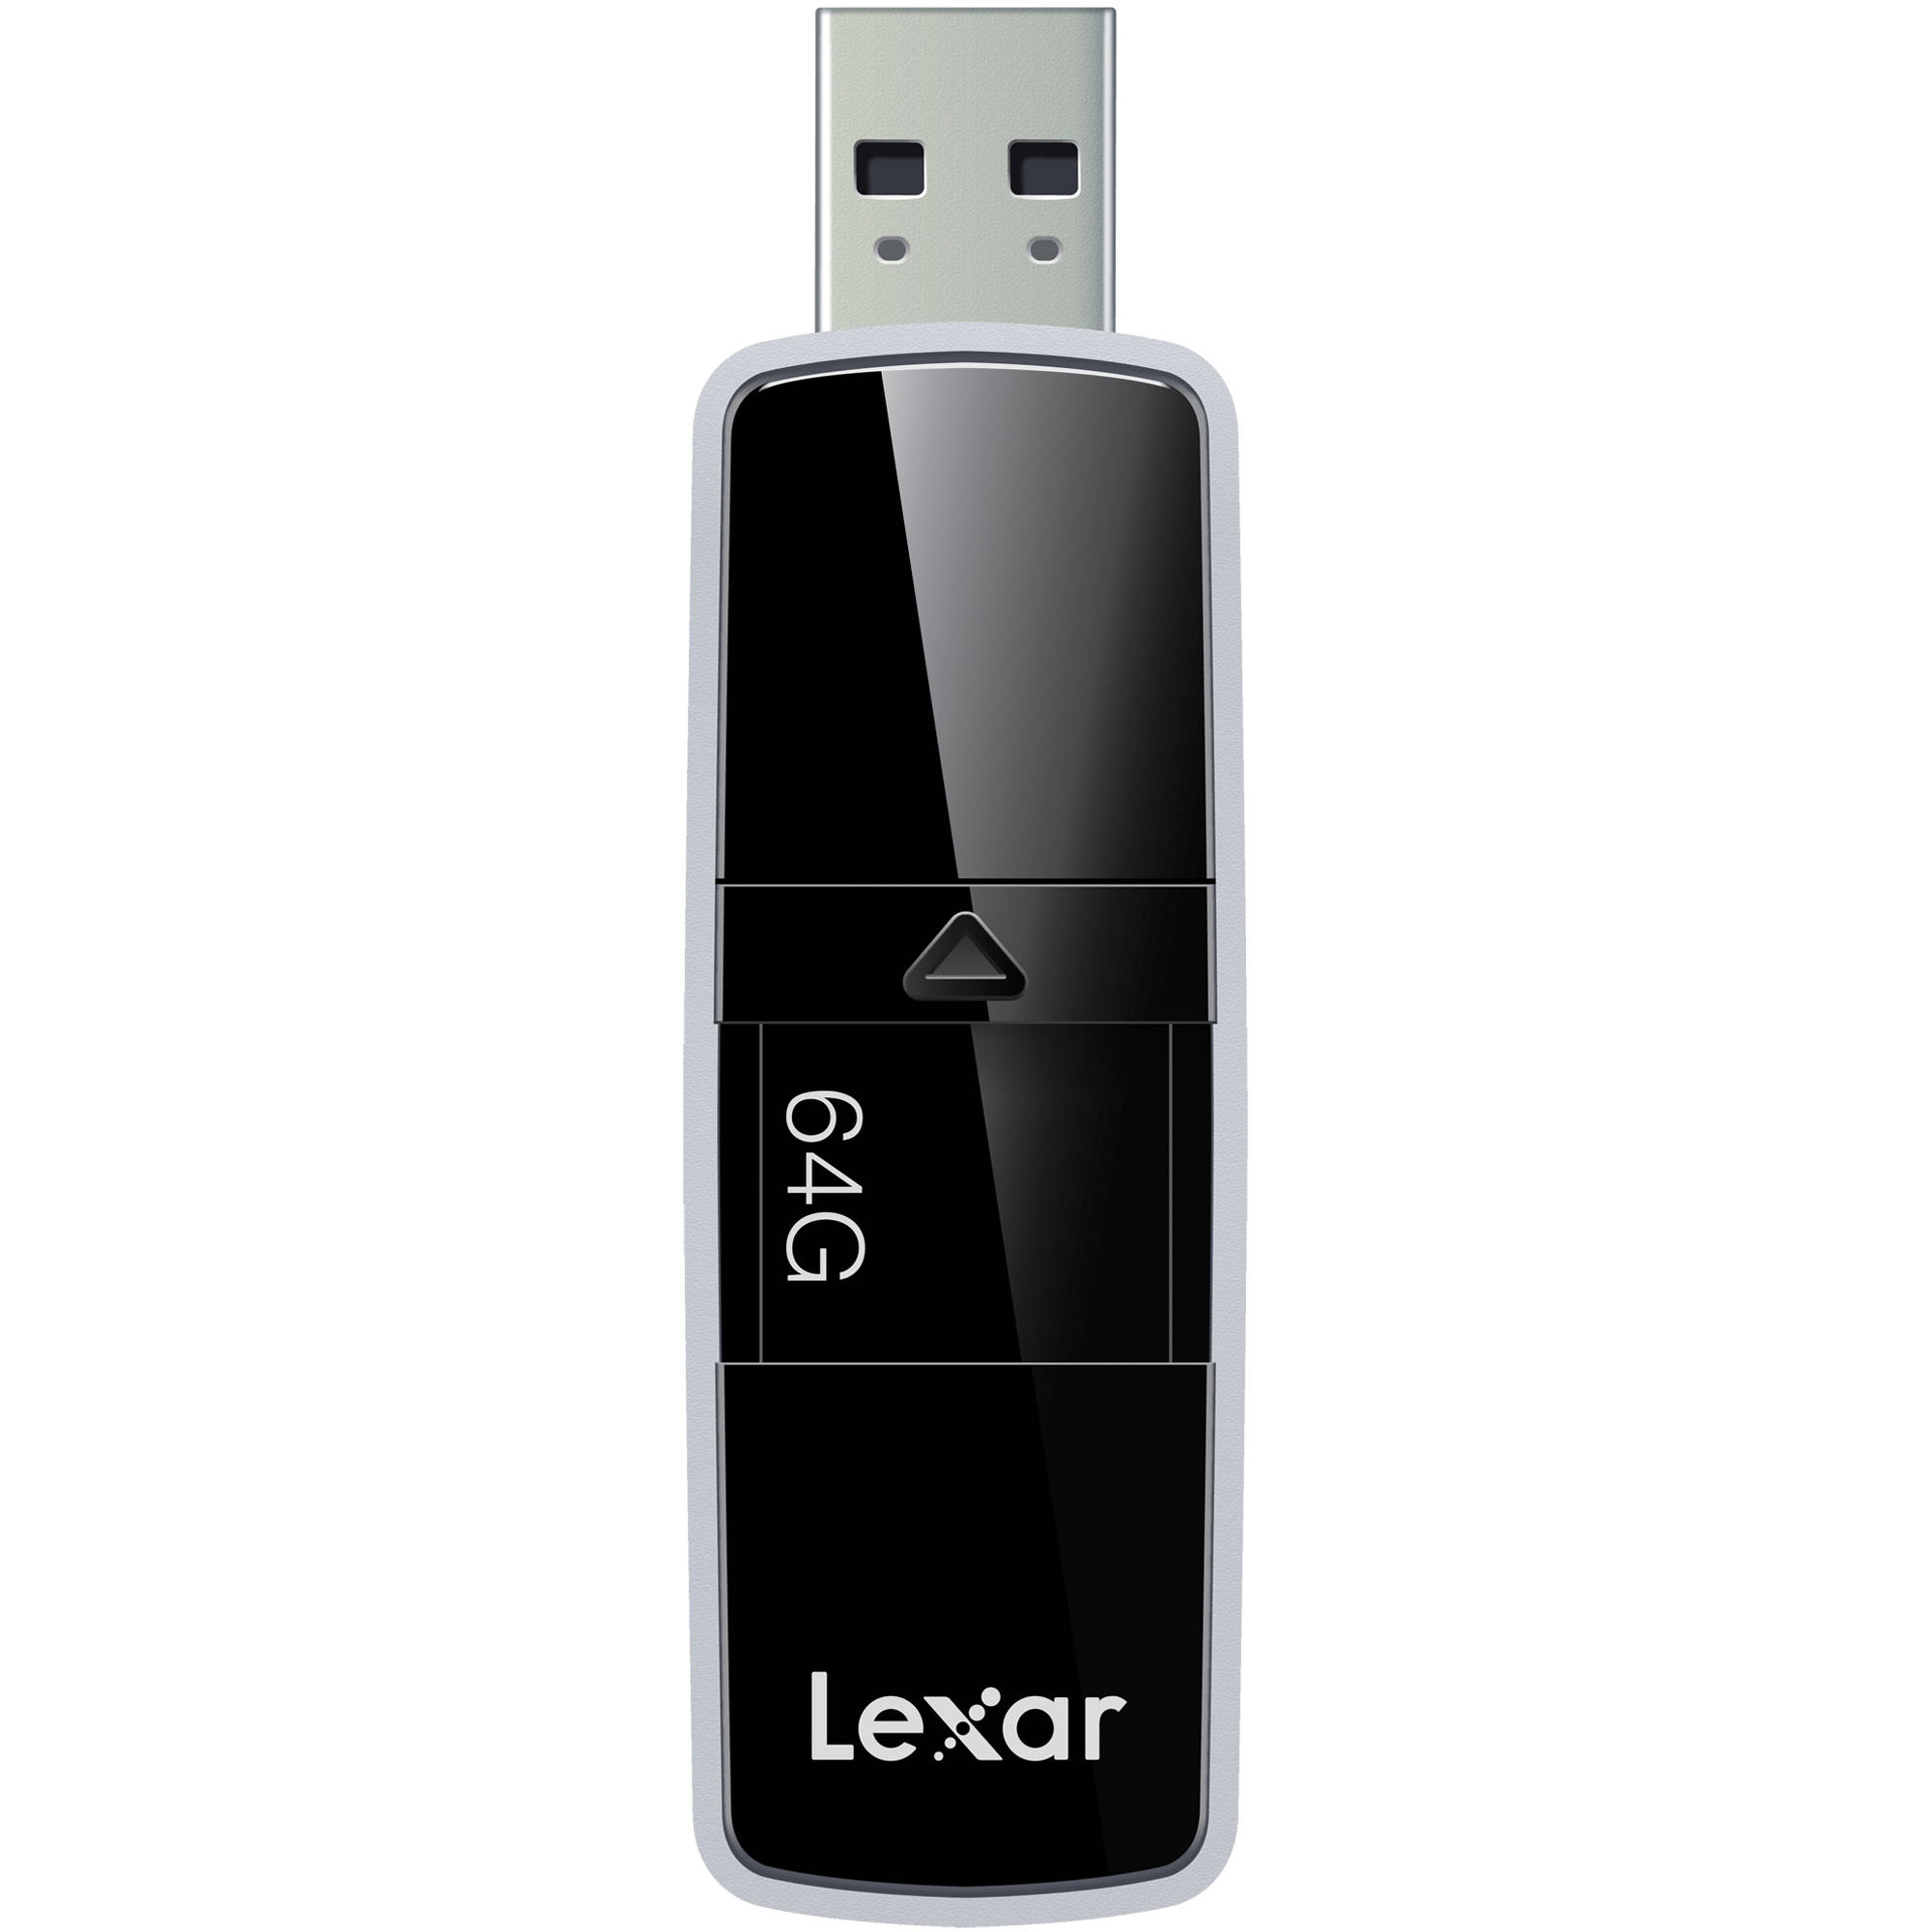 Lexar 64GB P20 JumpDrive USB 3.0